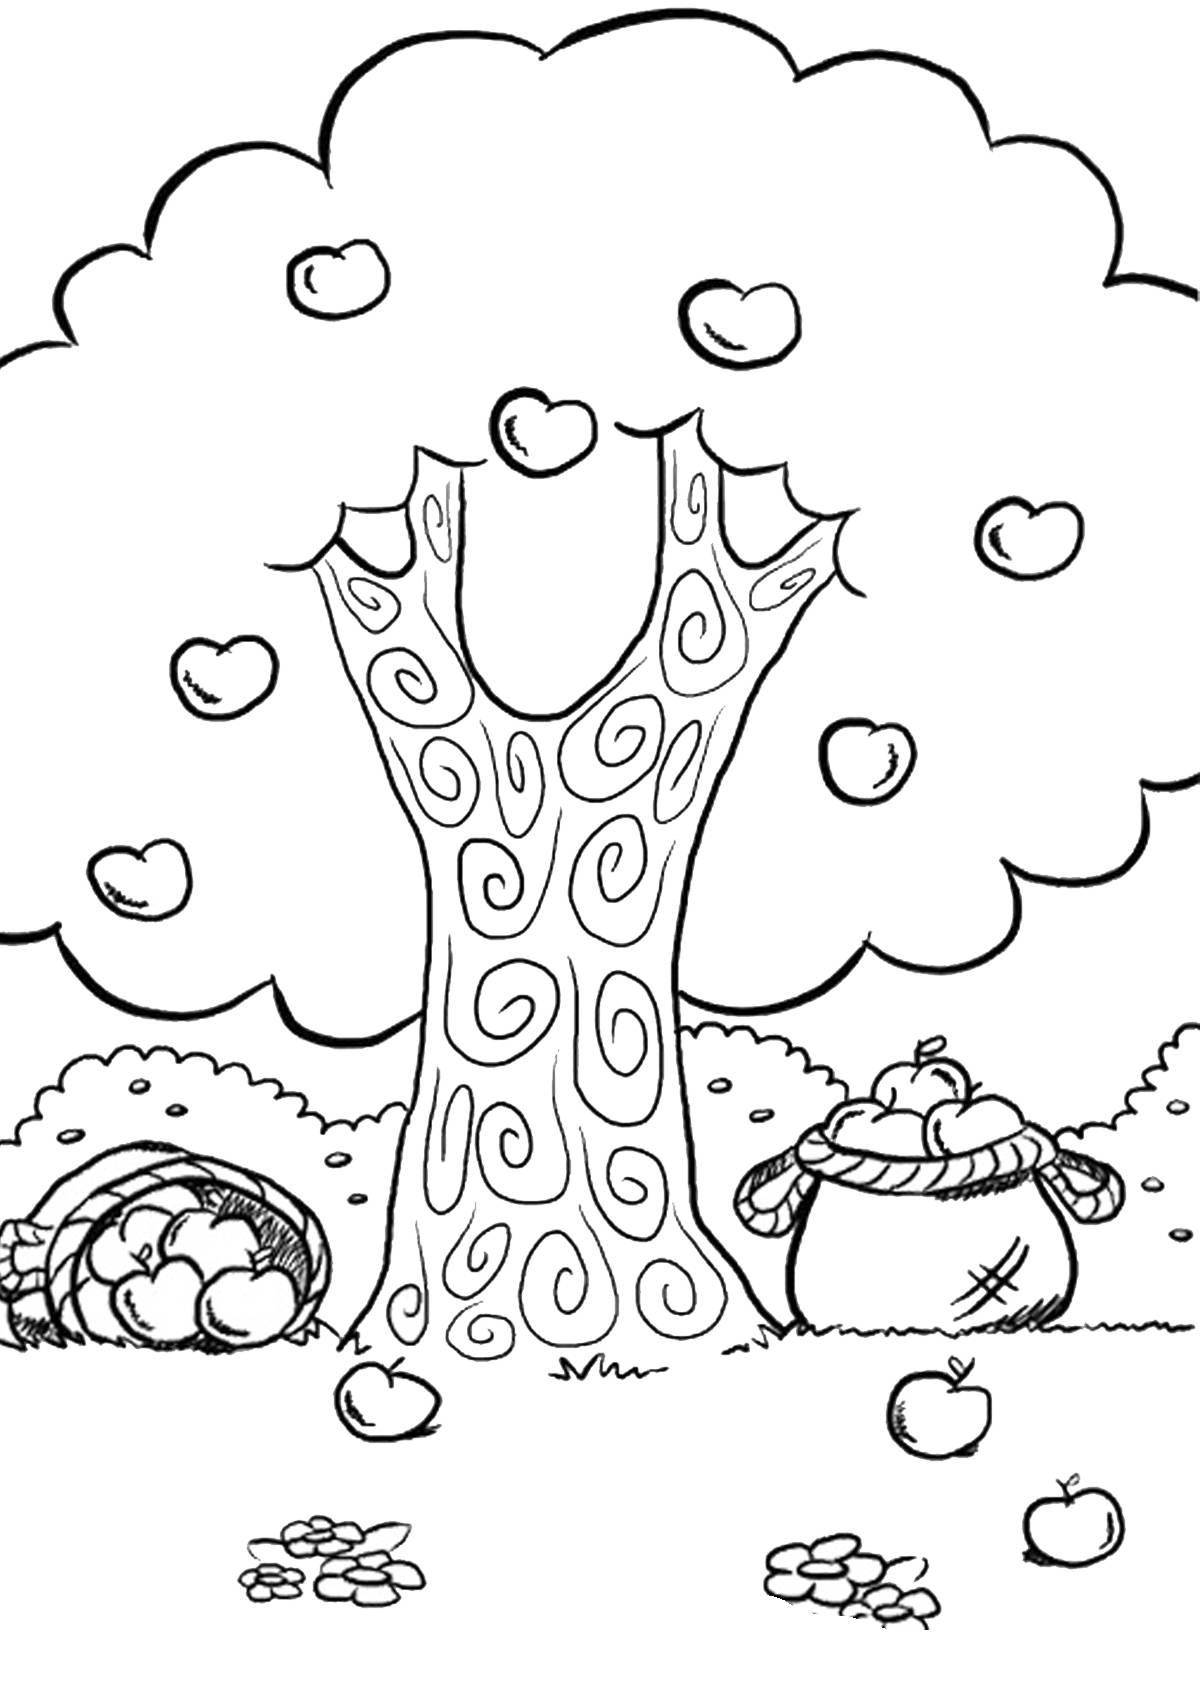 Анимированная страница раскраски деревьев для детей 5-6 лет